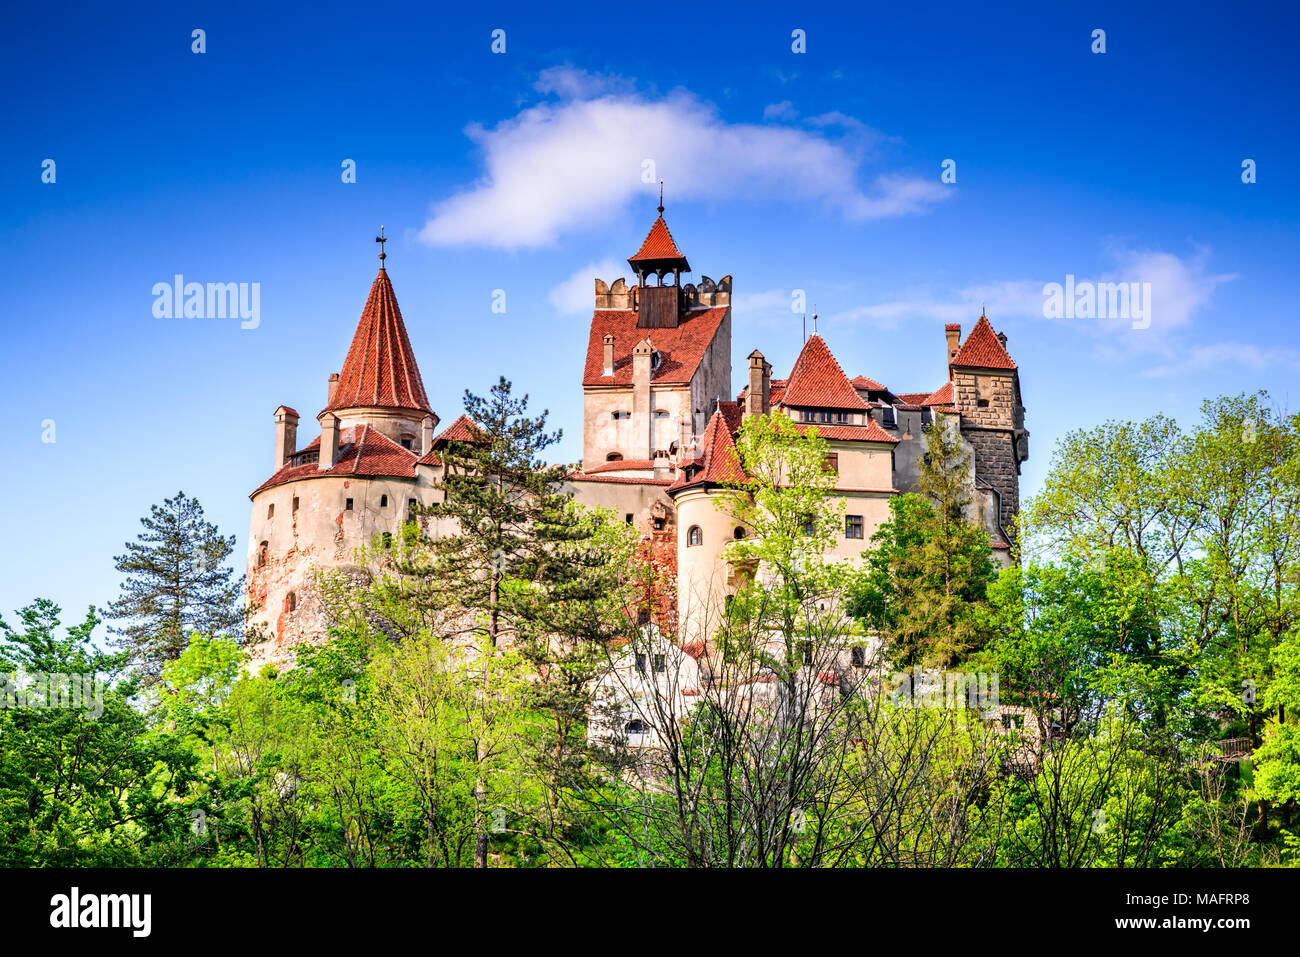 Il Castello di Dracula, crusca, Romania. Molla stupefacente immagine di Vlad l'Impalatore cittadella in Brasov, Transilvania, Europa orientale. Foto Stock